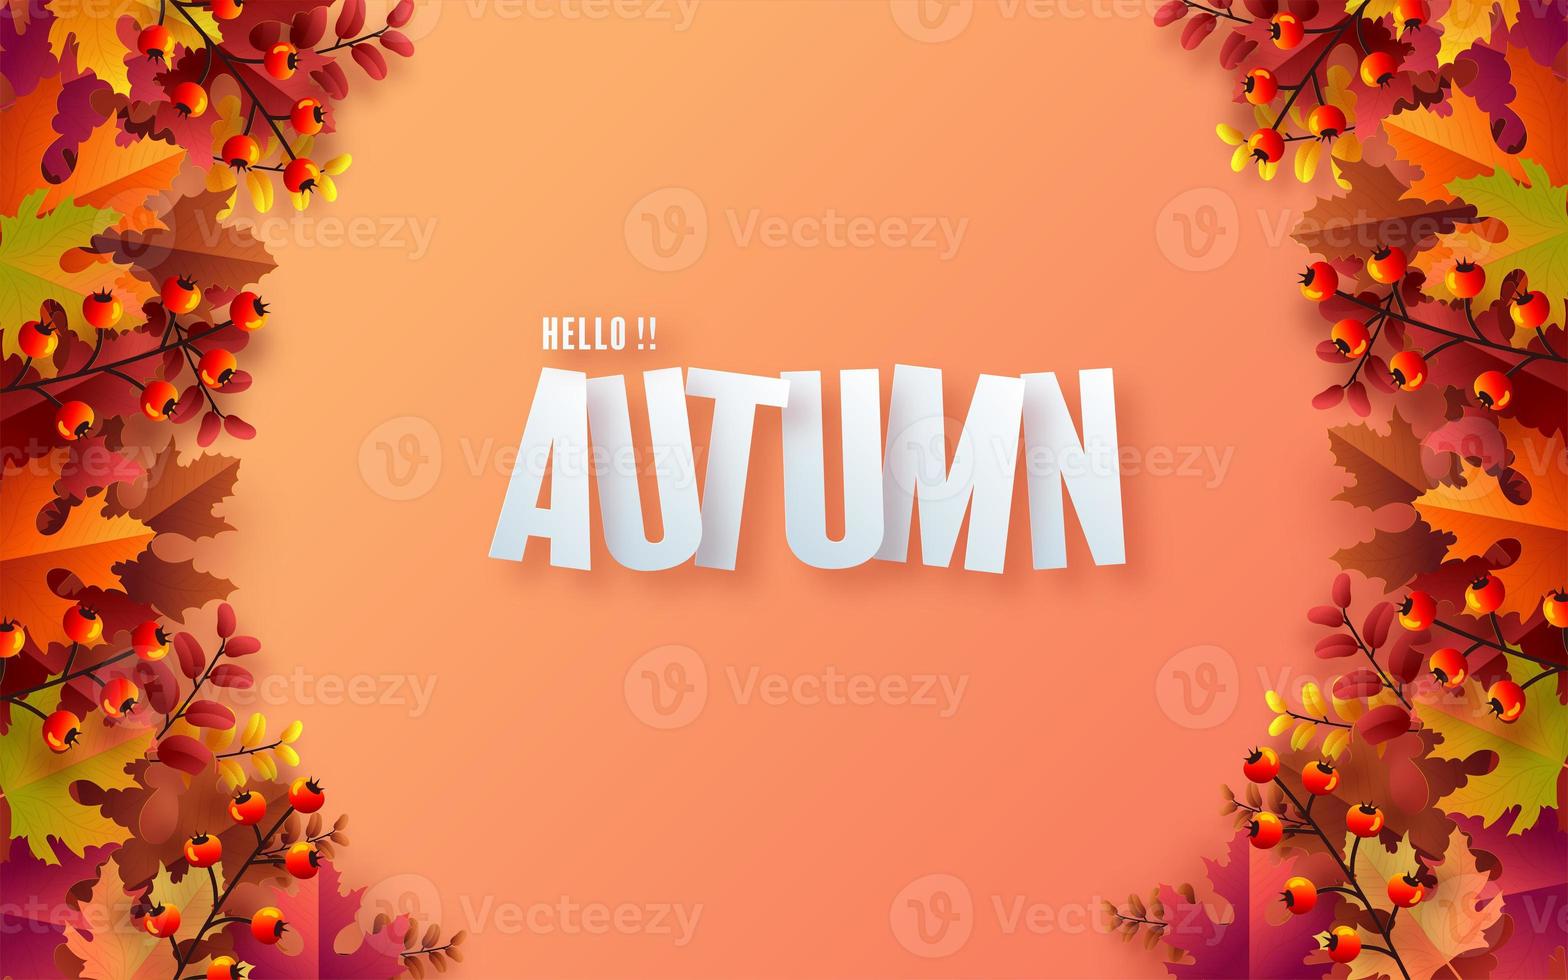 fond saisonnier de vacances d'automne avec des feuilles d'automne colorées photo